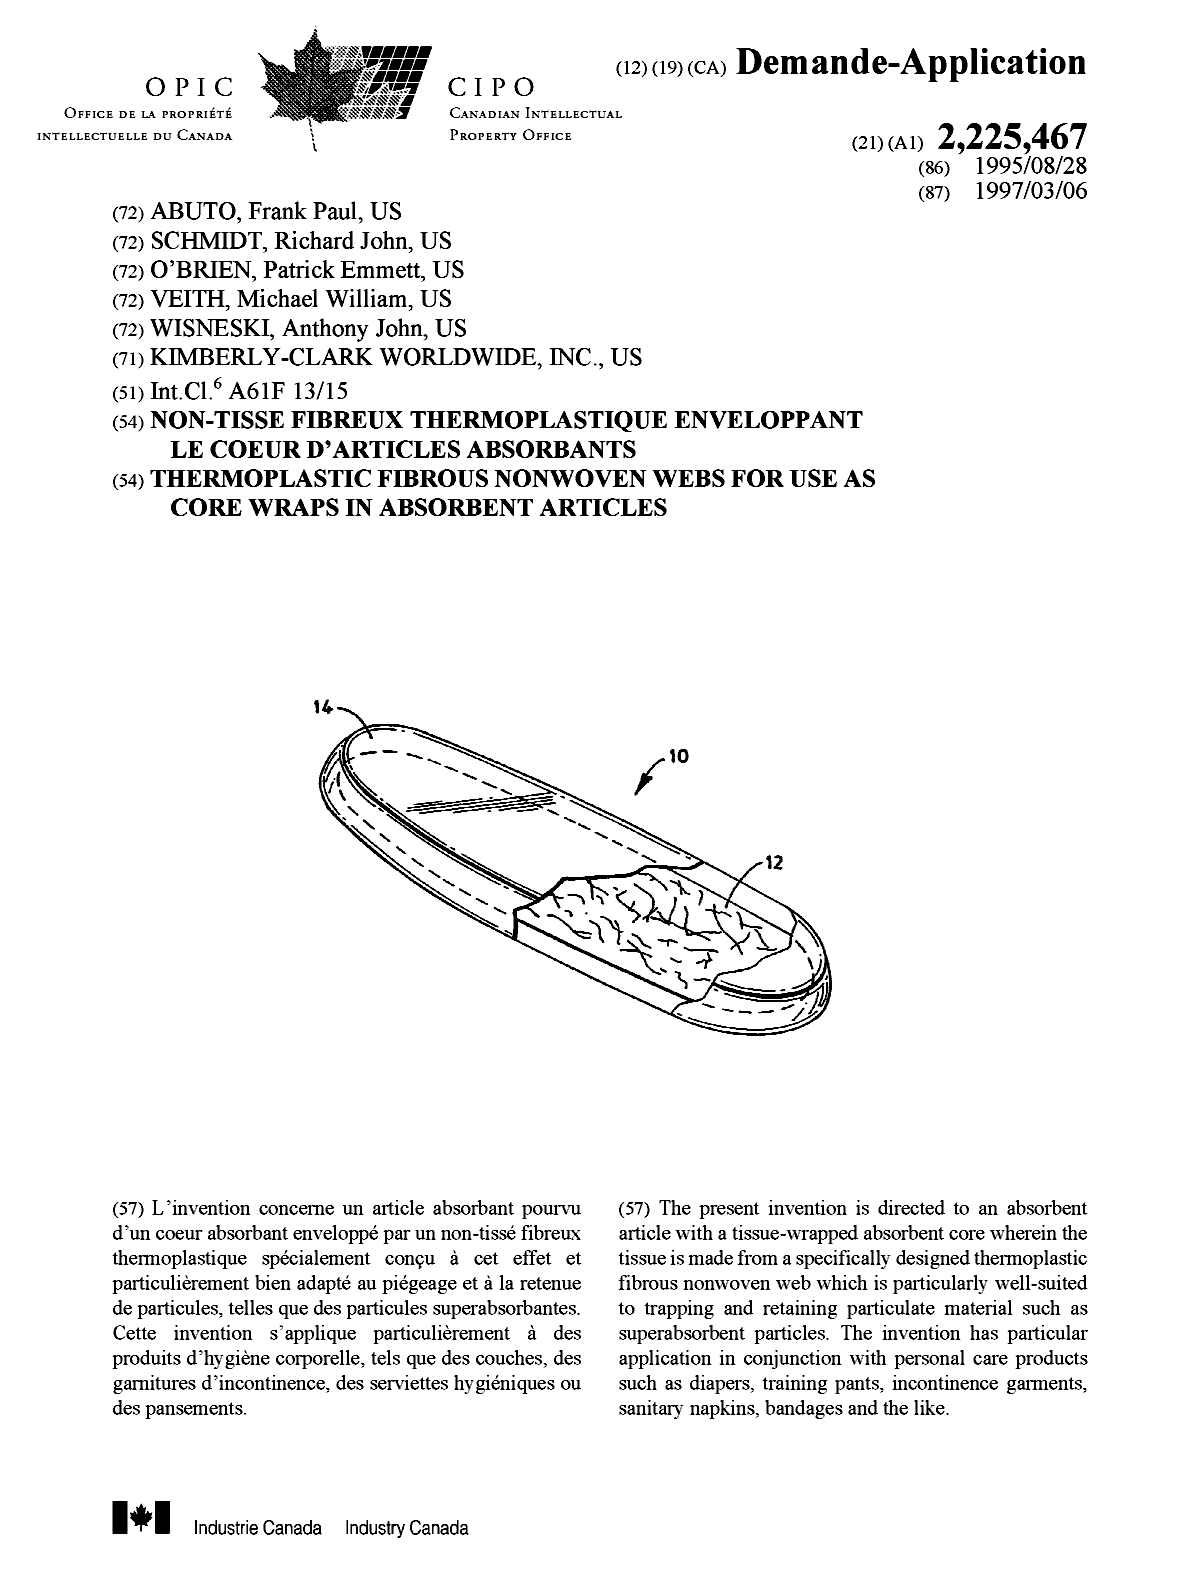 Document de brevet canadien 2225467. Page couverture 19980414. Image 1 de 1